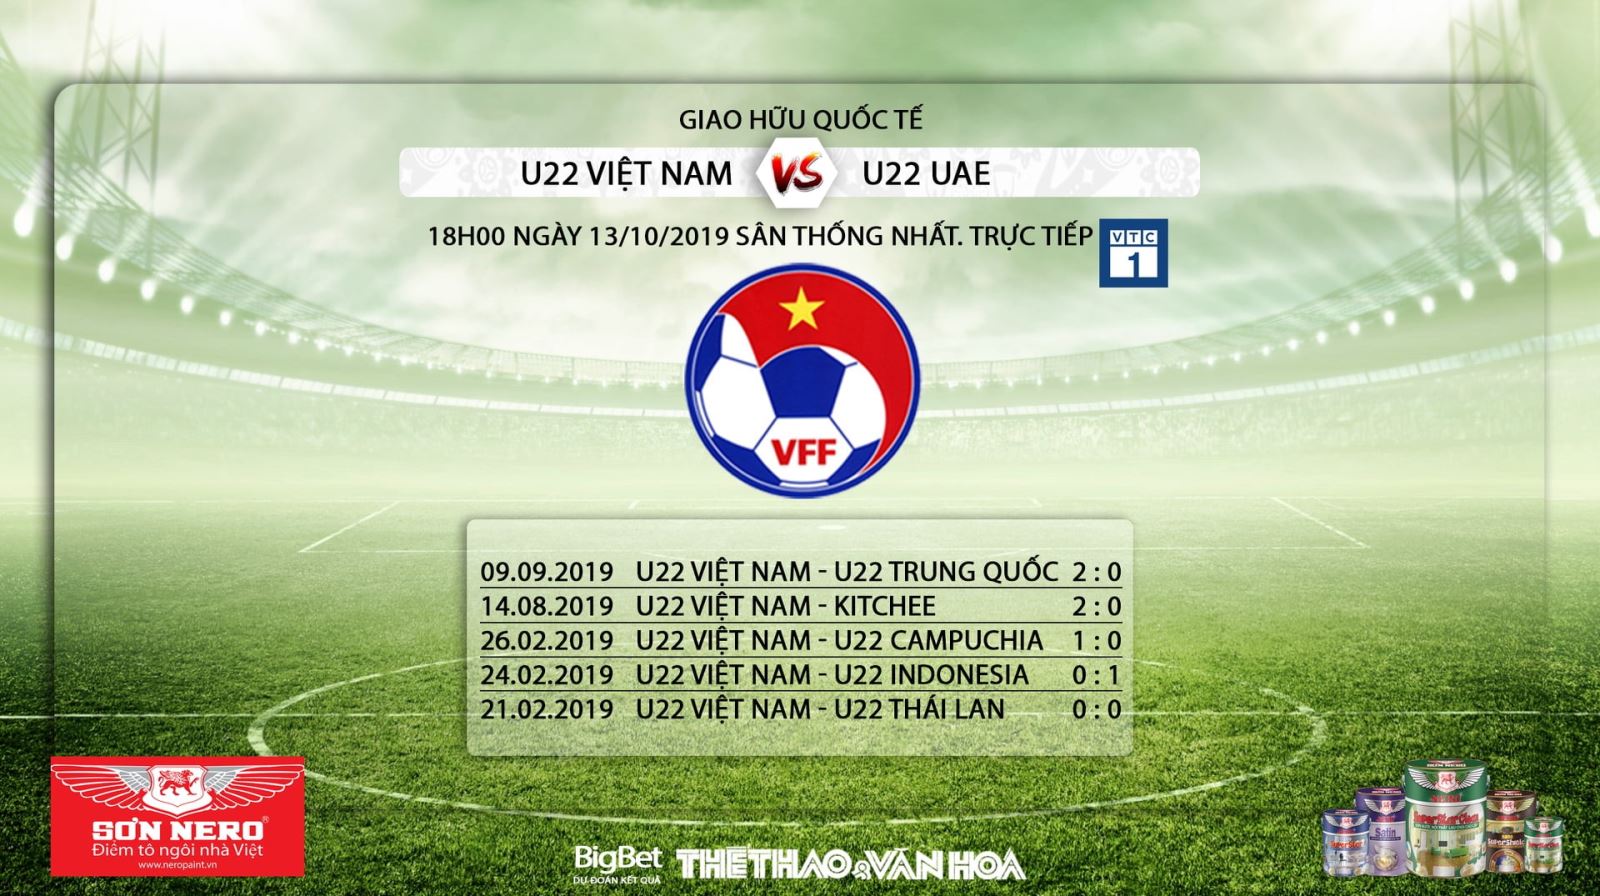 Ket qua bong da hôm nay, Kết quả bóng đá, U22 Việt Nam, U22 UAE, U22 Việt Nam vs U22 UAE, trực tiếp bóng đá, VTC1, VTC3, VTV5, VTV6